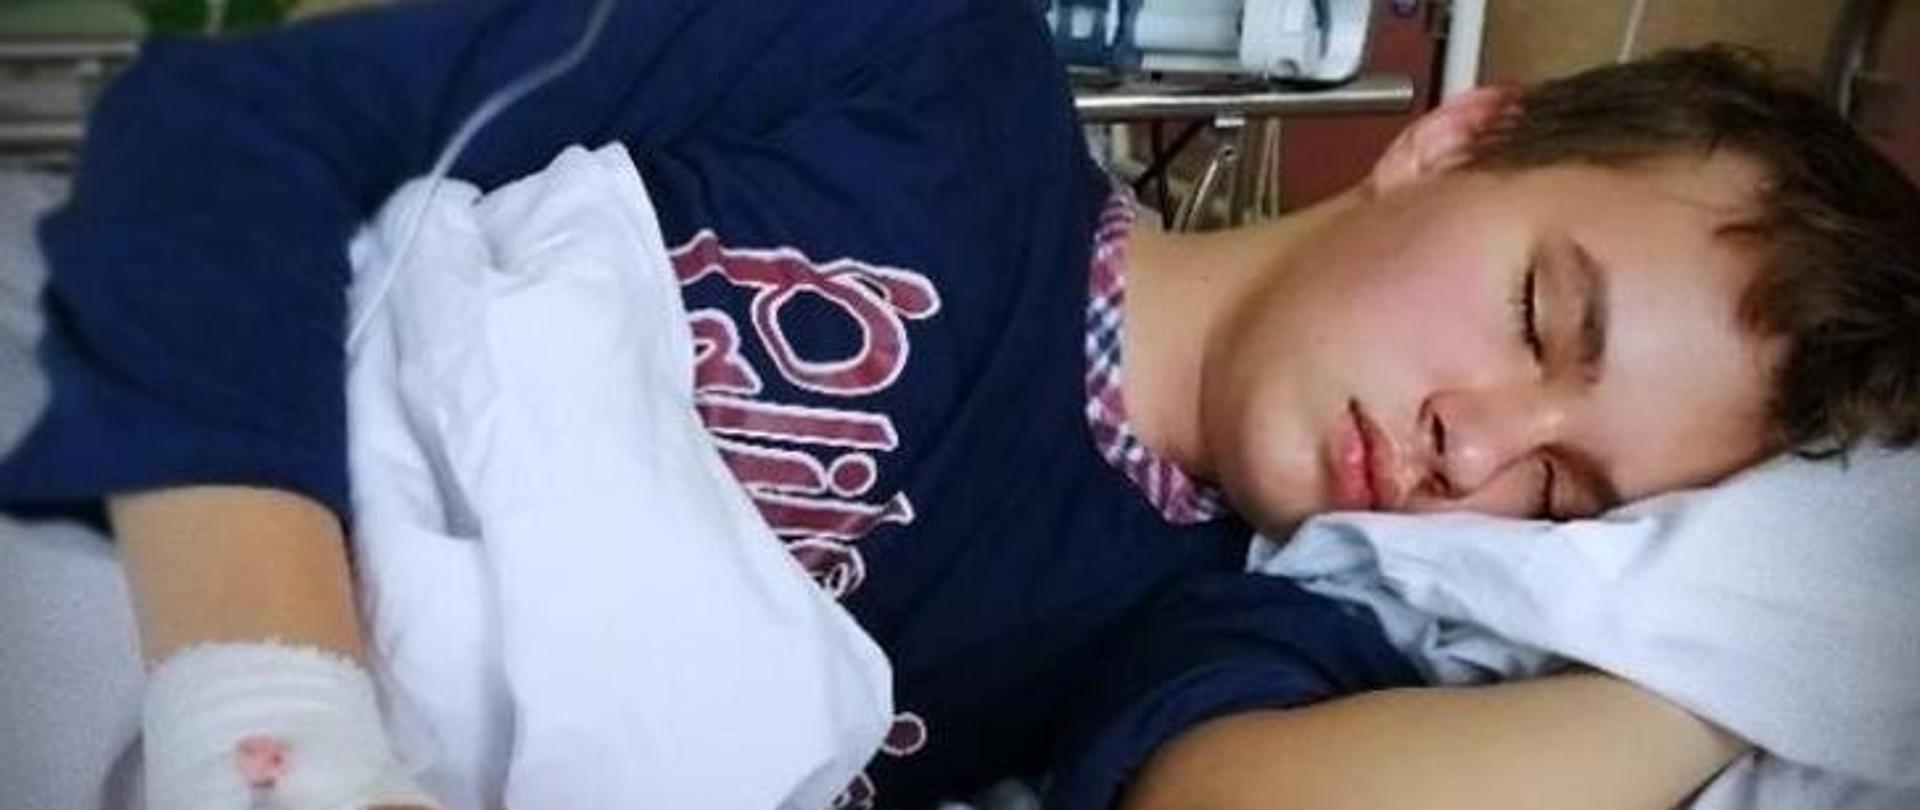 Mateusz leży lewym bokiem na łóżku szpitalnym, chłopiec ma zamknięte oczy, w tle aparatura szpitalna